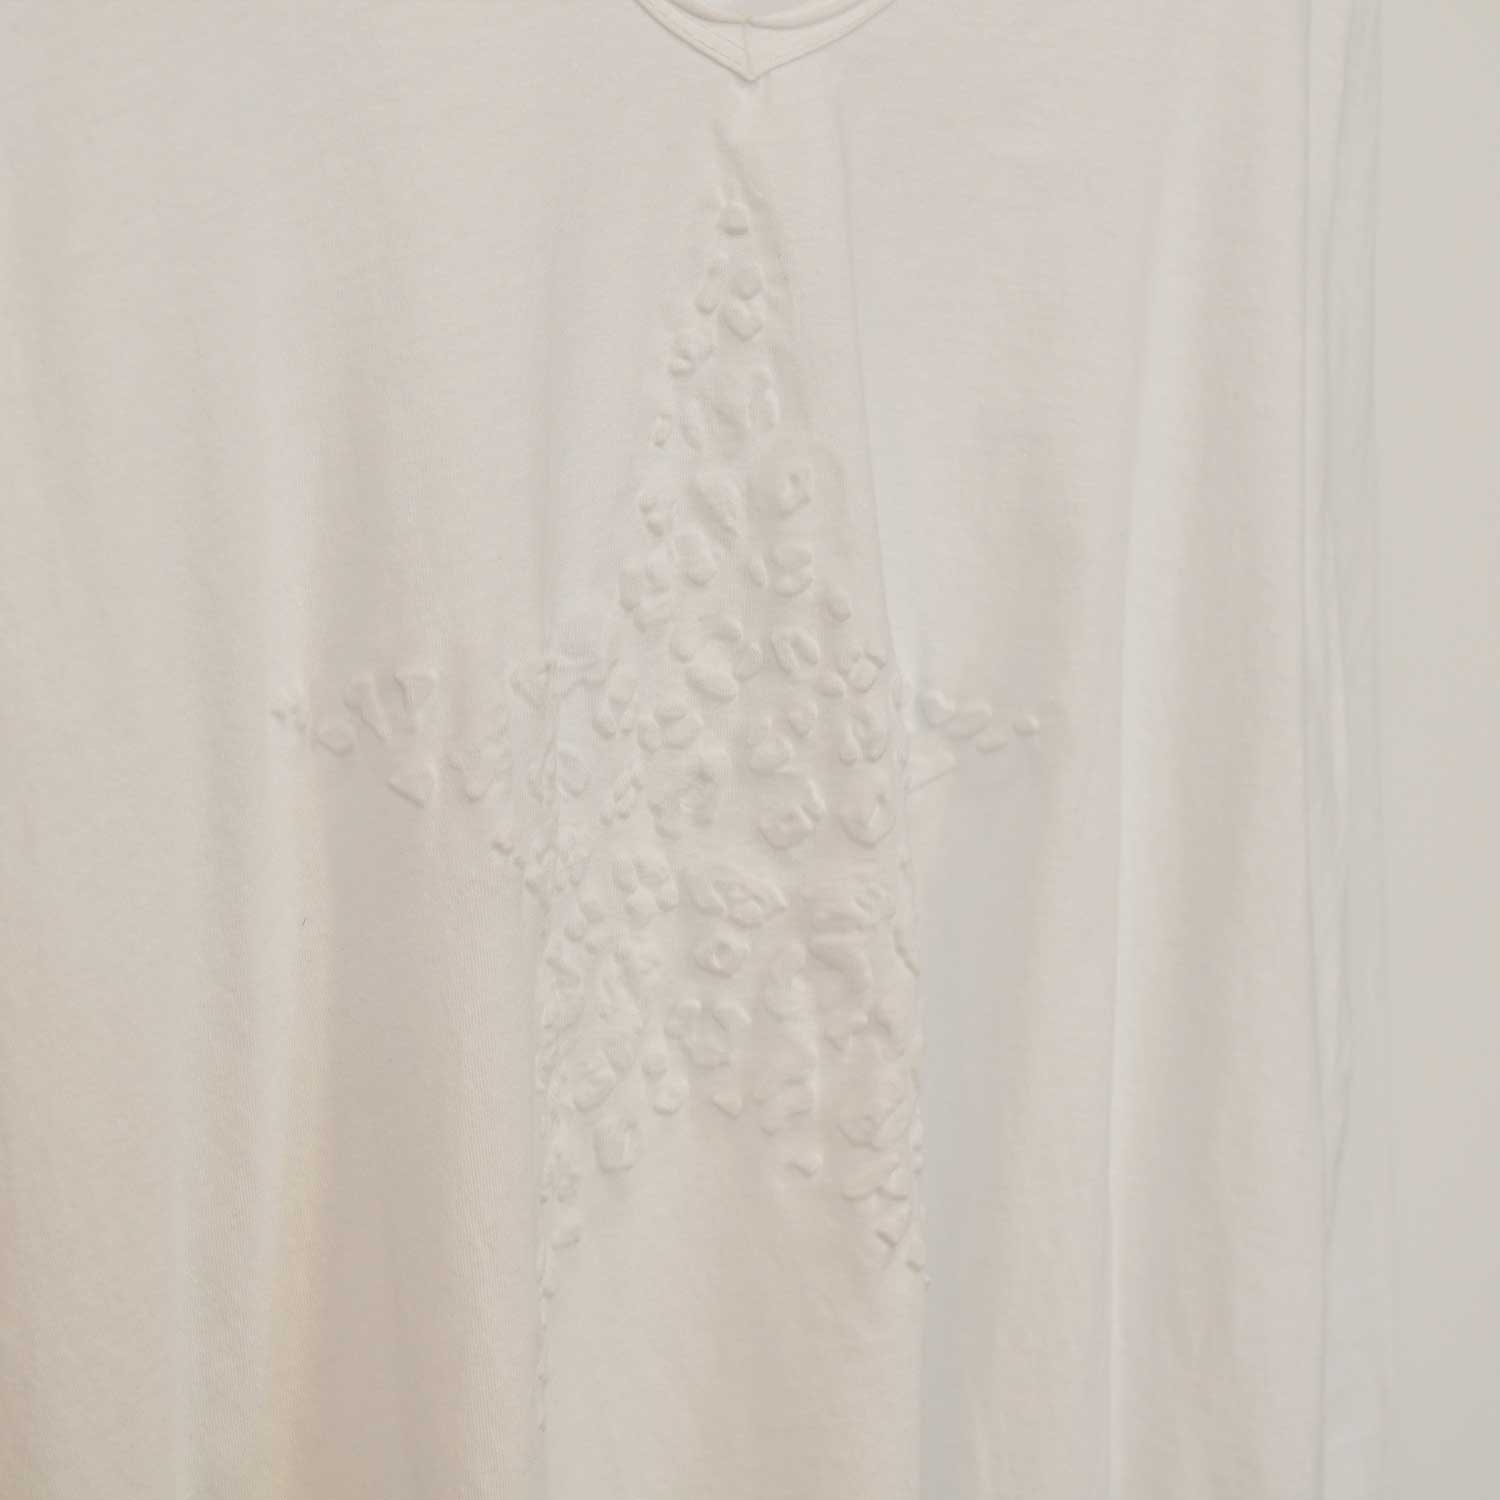 Camiseta estrella relieve blanca